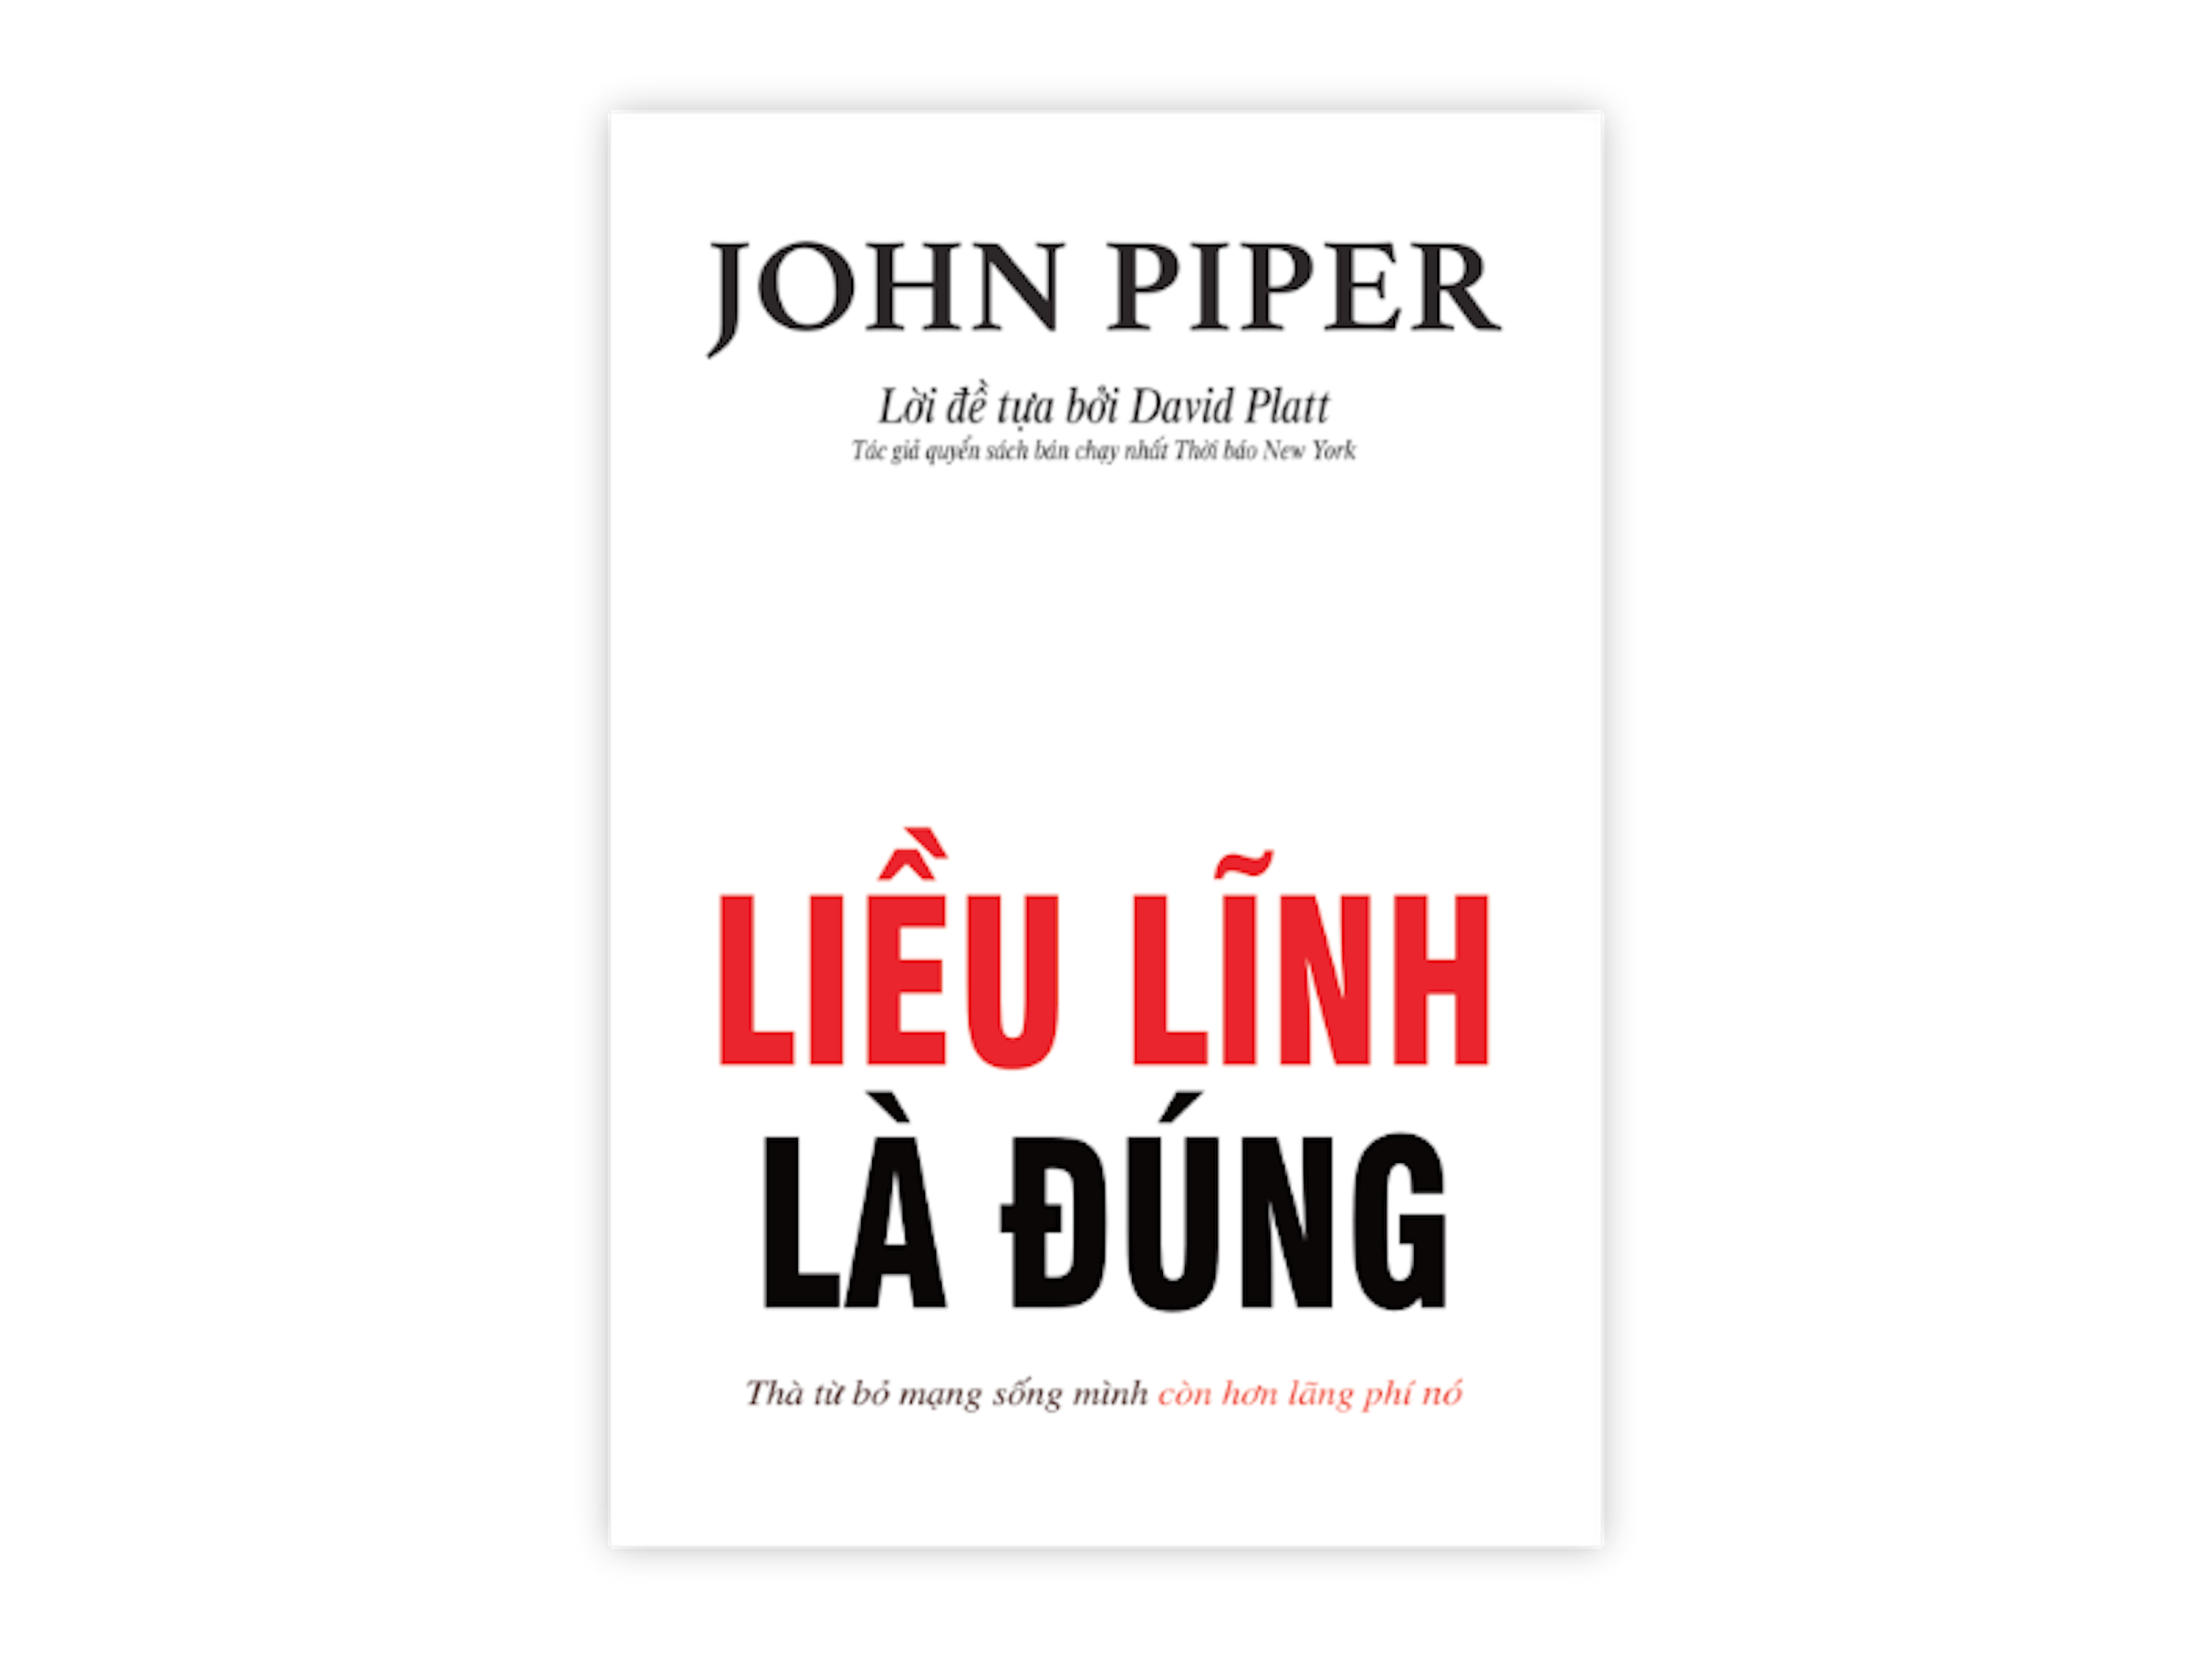 Lieu Linh La Dung